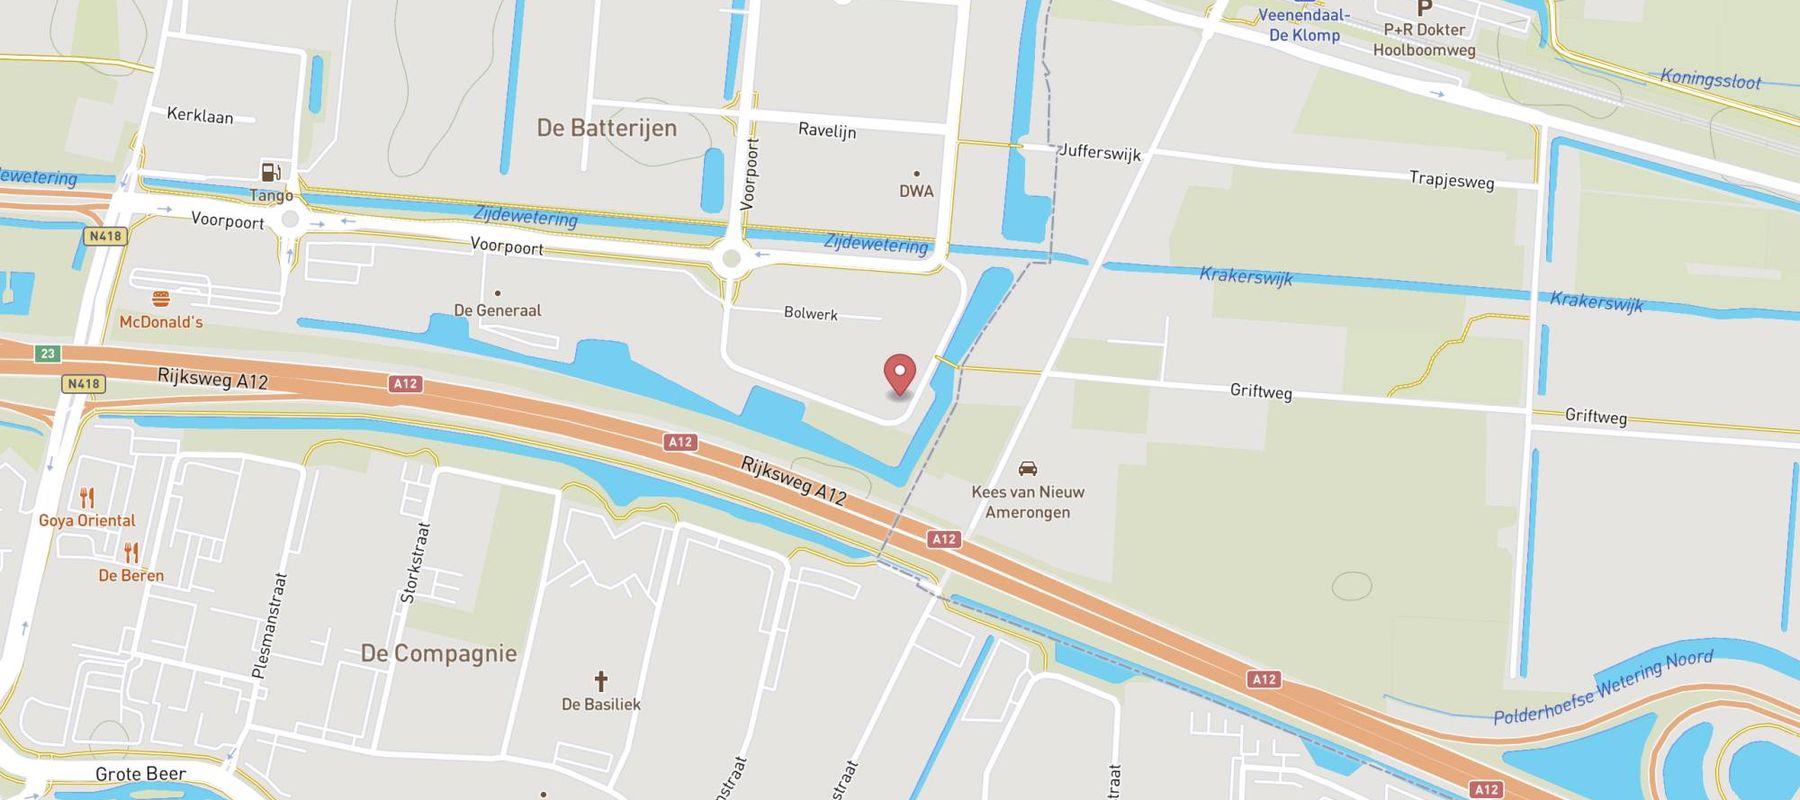 Van der Valk Hotel Veenendaal map